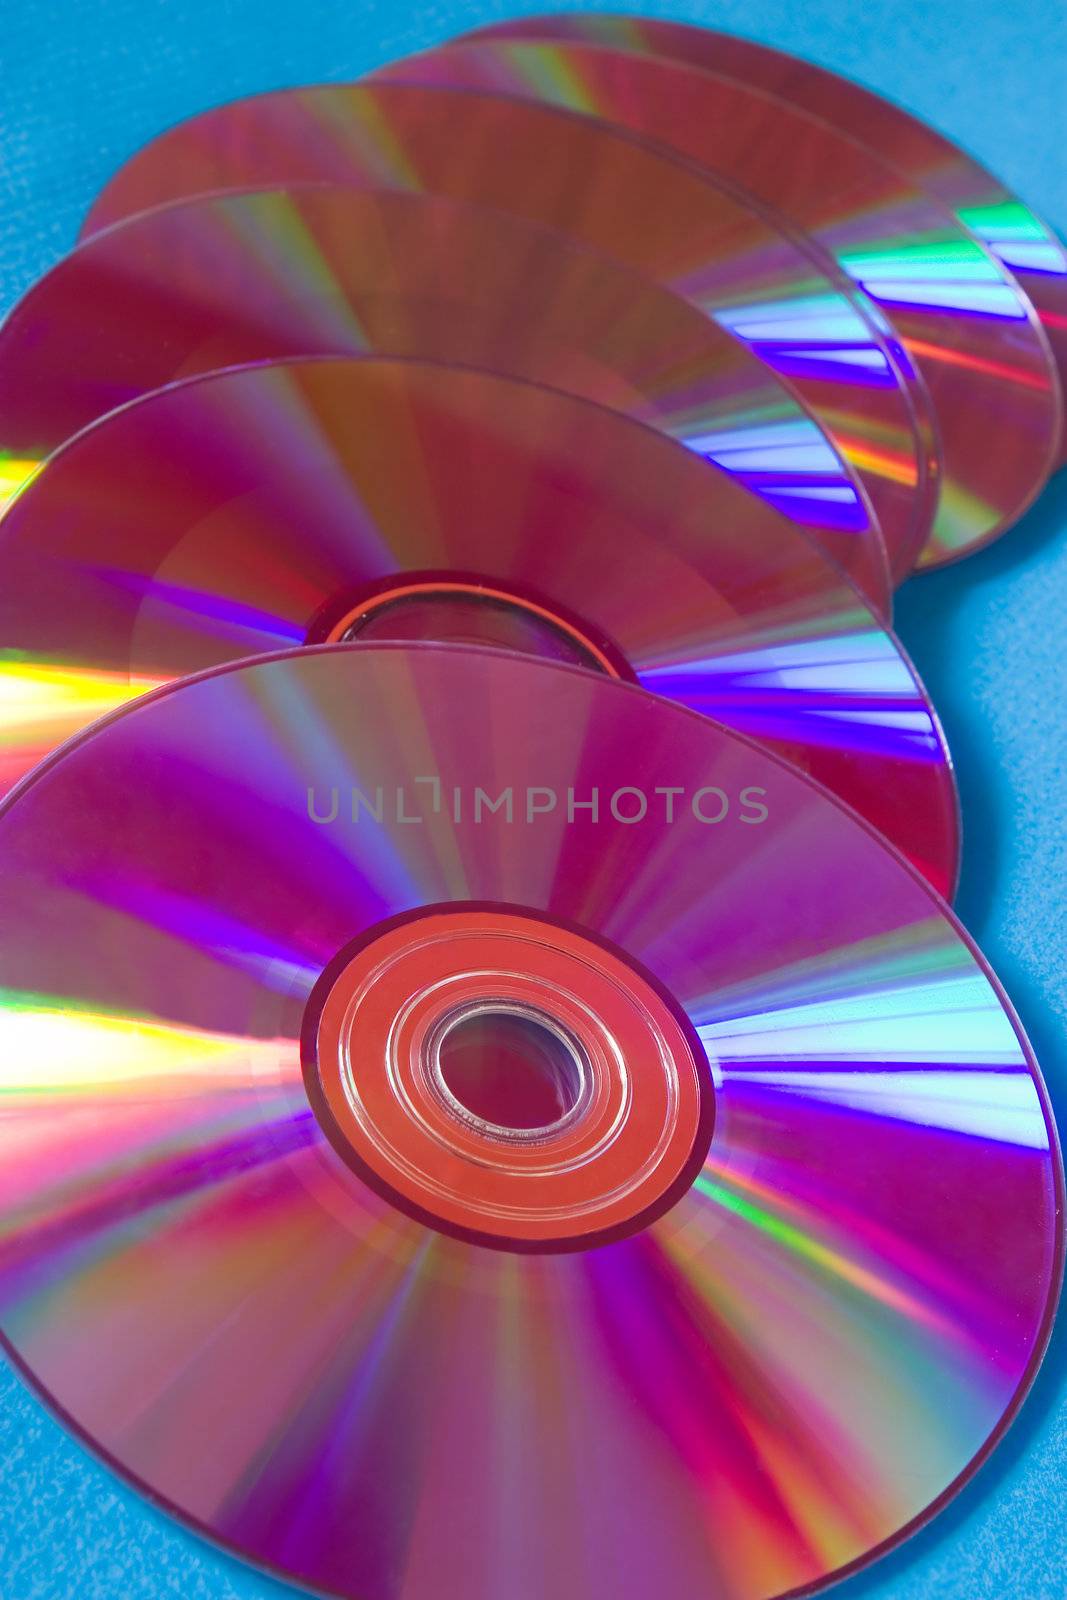 cd disks by Gravicapa